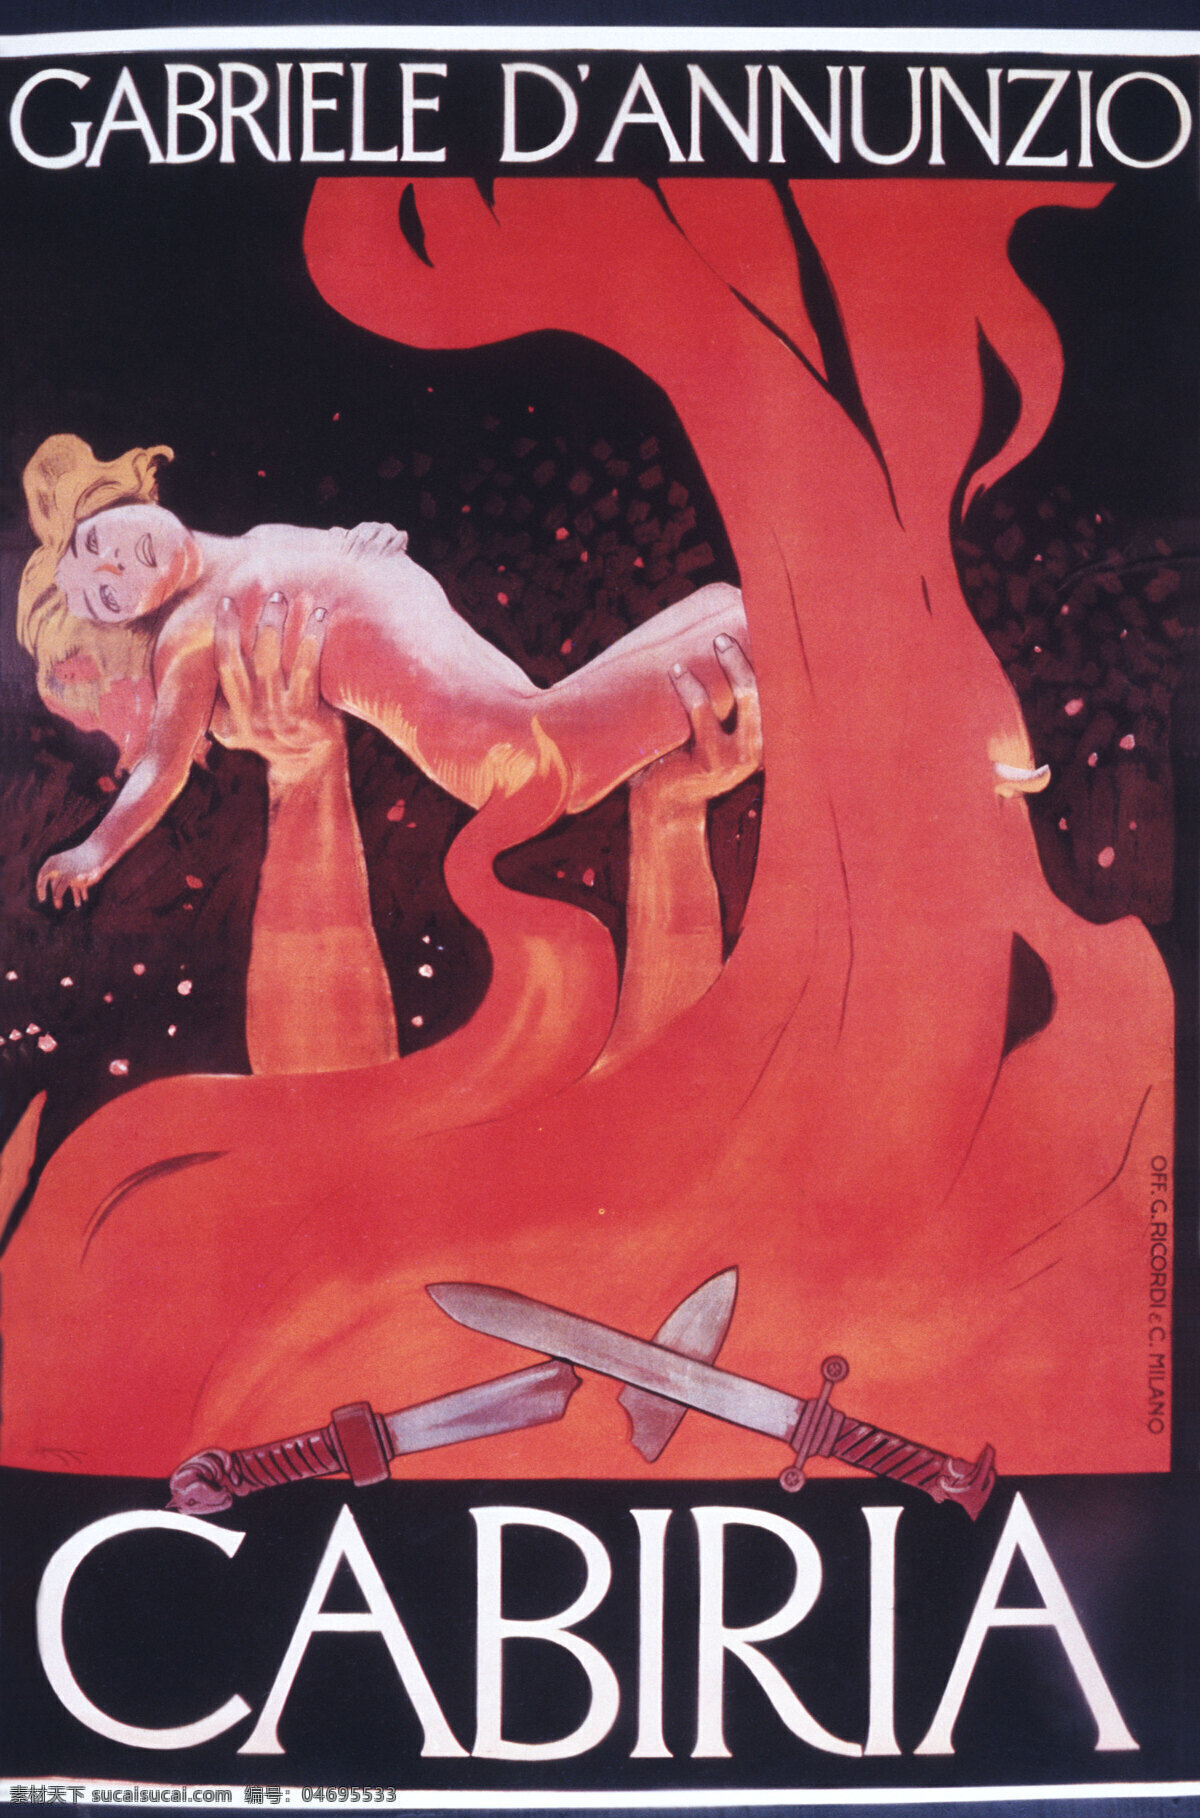 国外 红色 女人 欧式海报 欧洲 人物 海报 设计素材 被托起的女人 招贴设计 其他海报设计